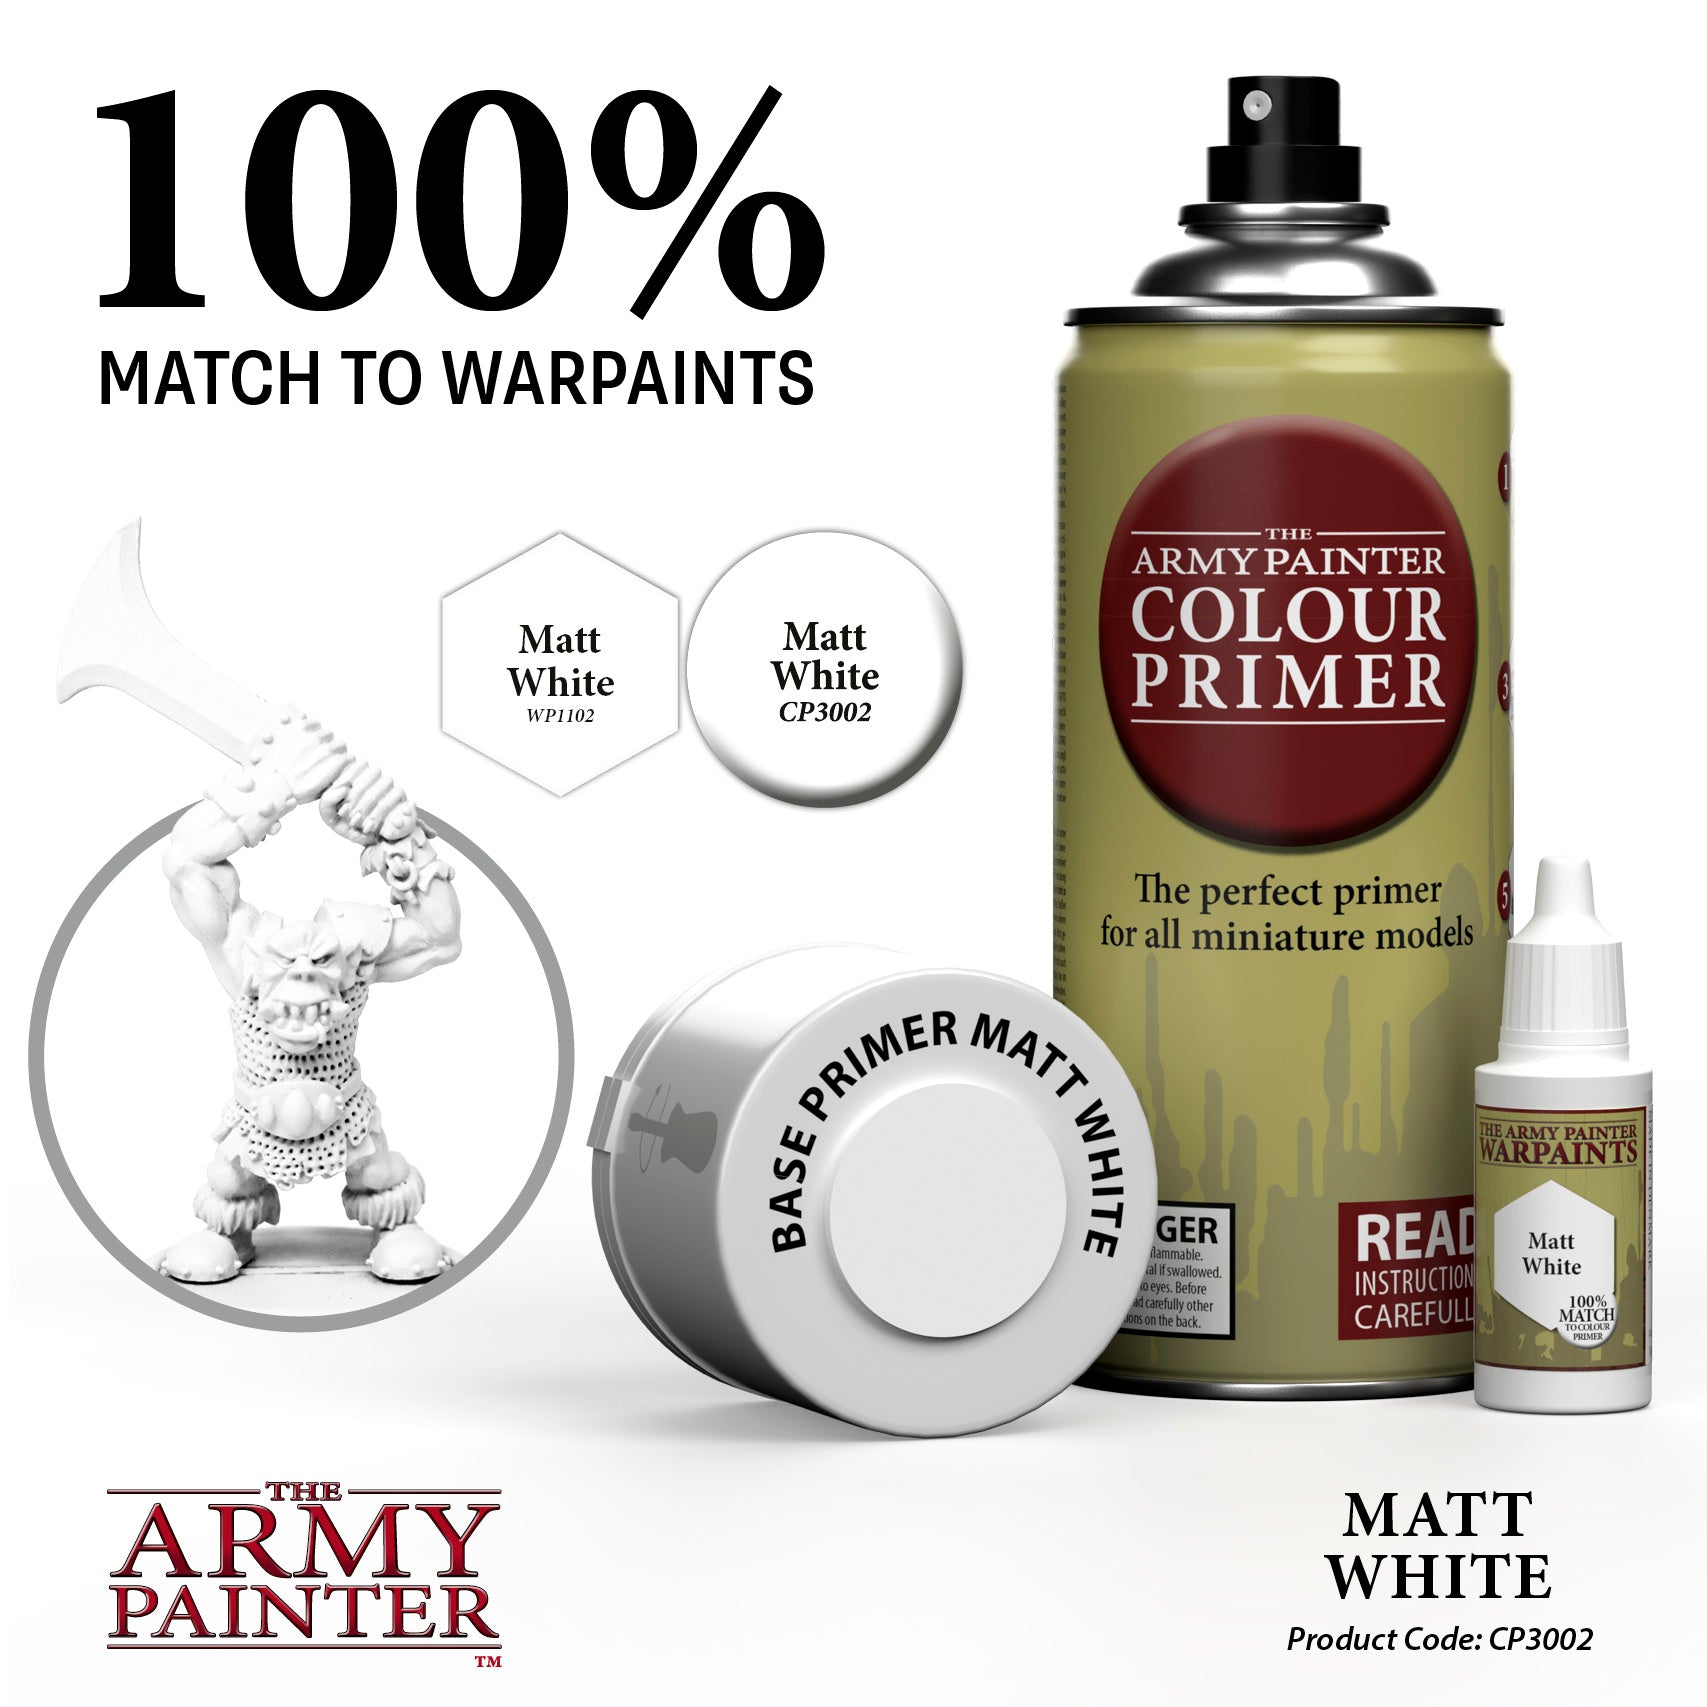 The Army Painter Colour Primer: Matt White (400ml) (CP3002